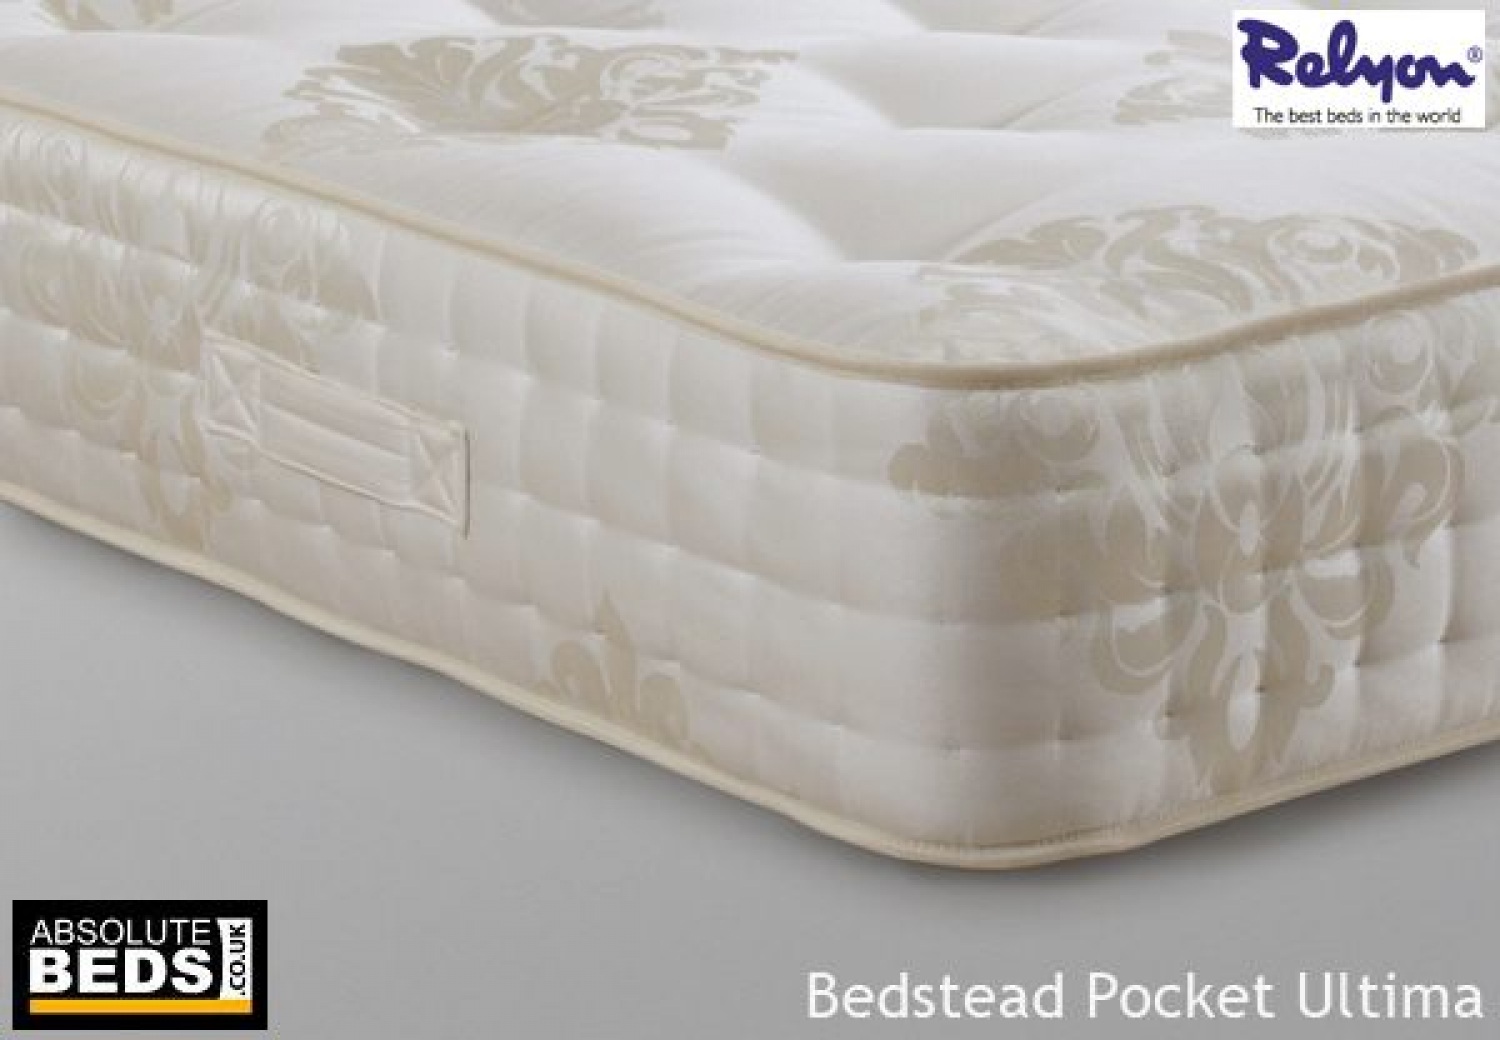 relyon bedstead pocket ultima mattress image